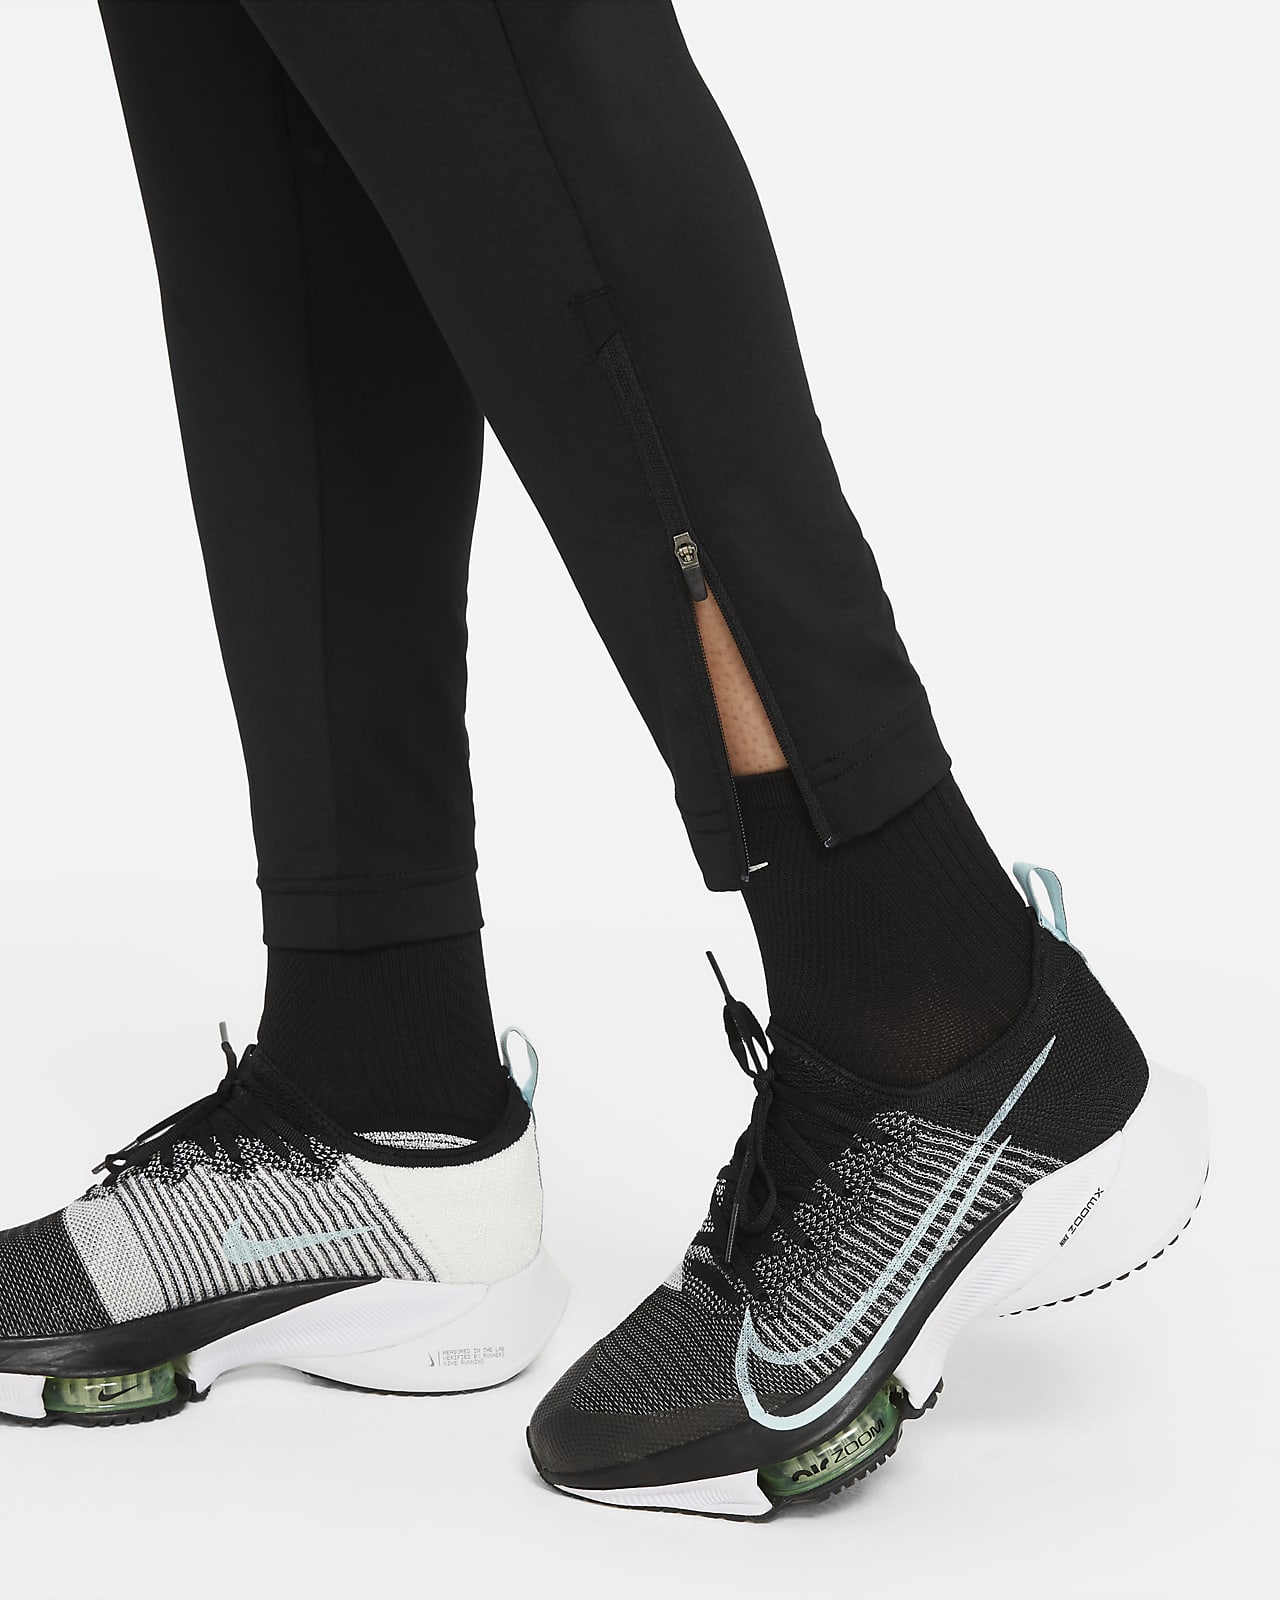 WMNS) Nike Yoga Dri-FIT Pant 'Black' DM7037-010 - KICKS CREW